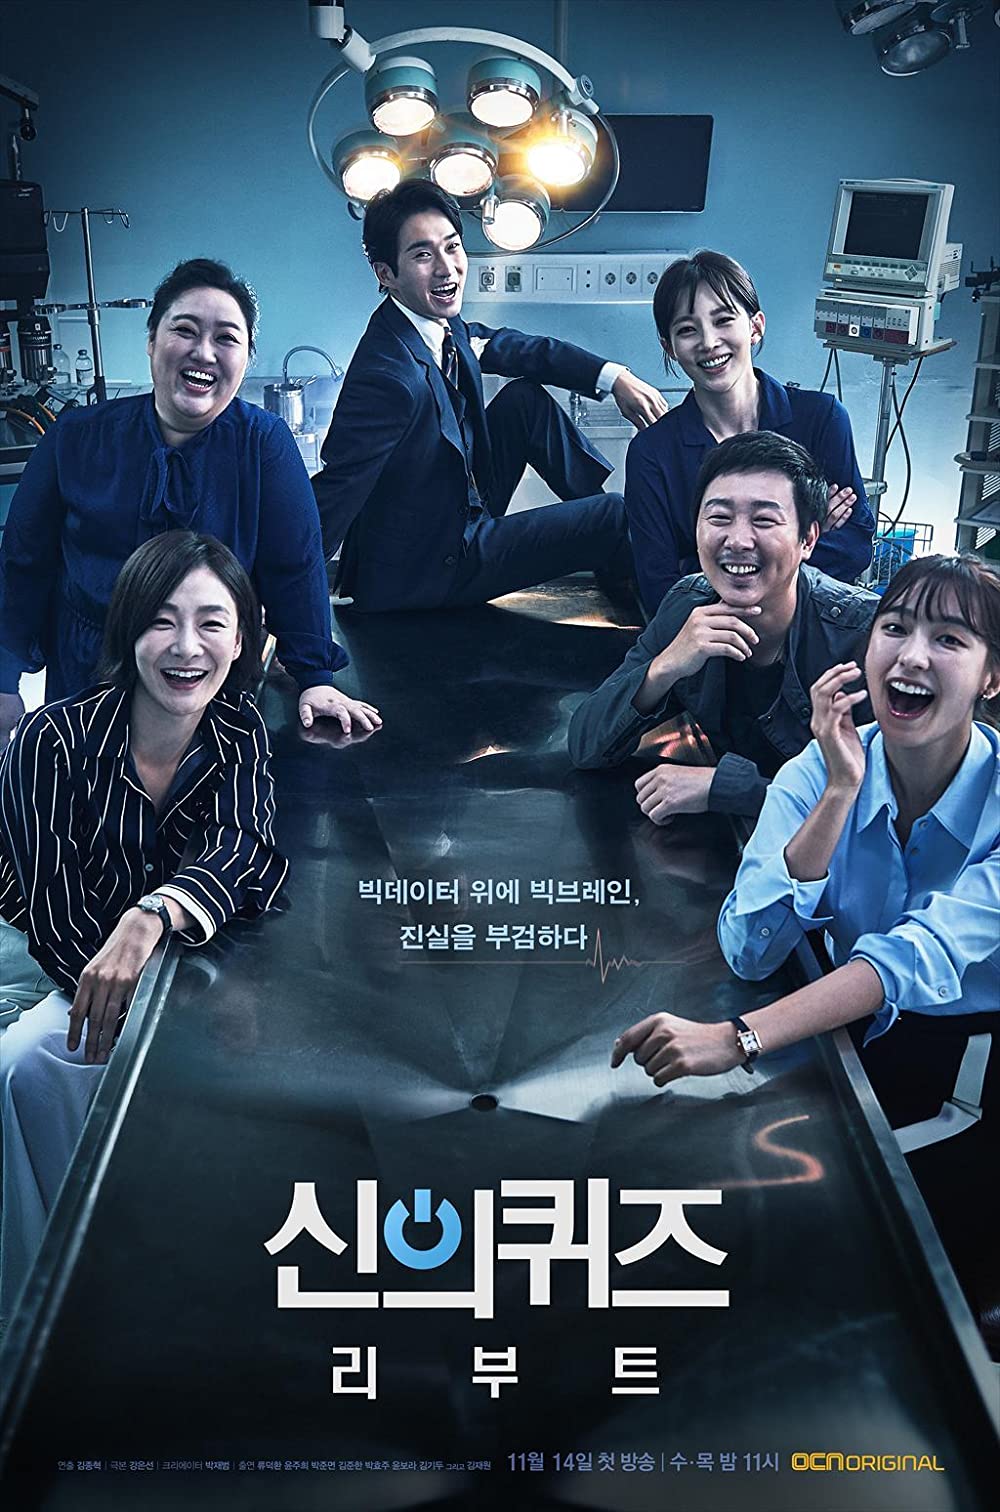 phim hình sự điều tra pháp y Hàn Quốc